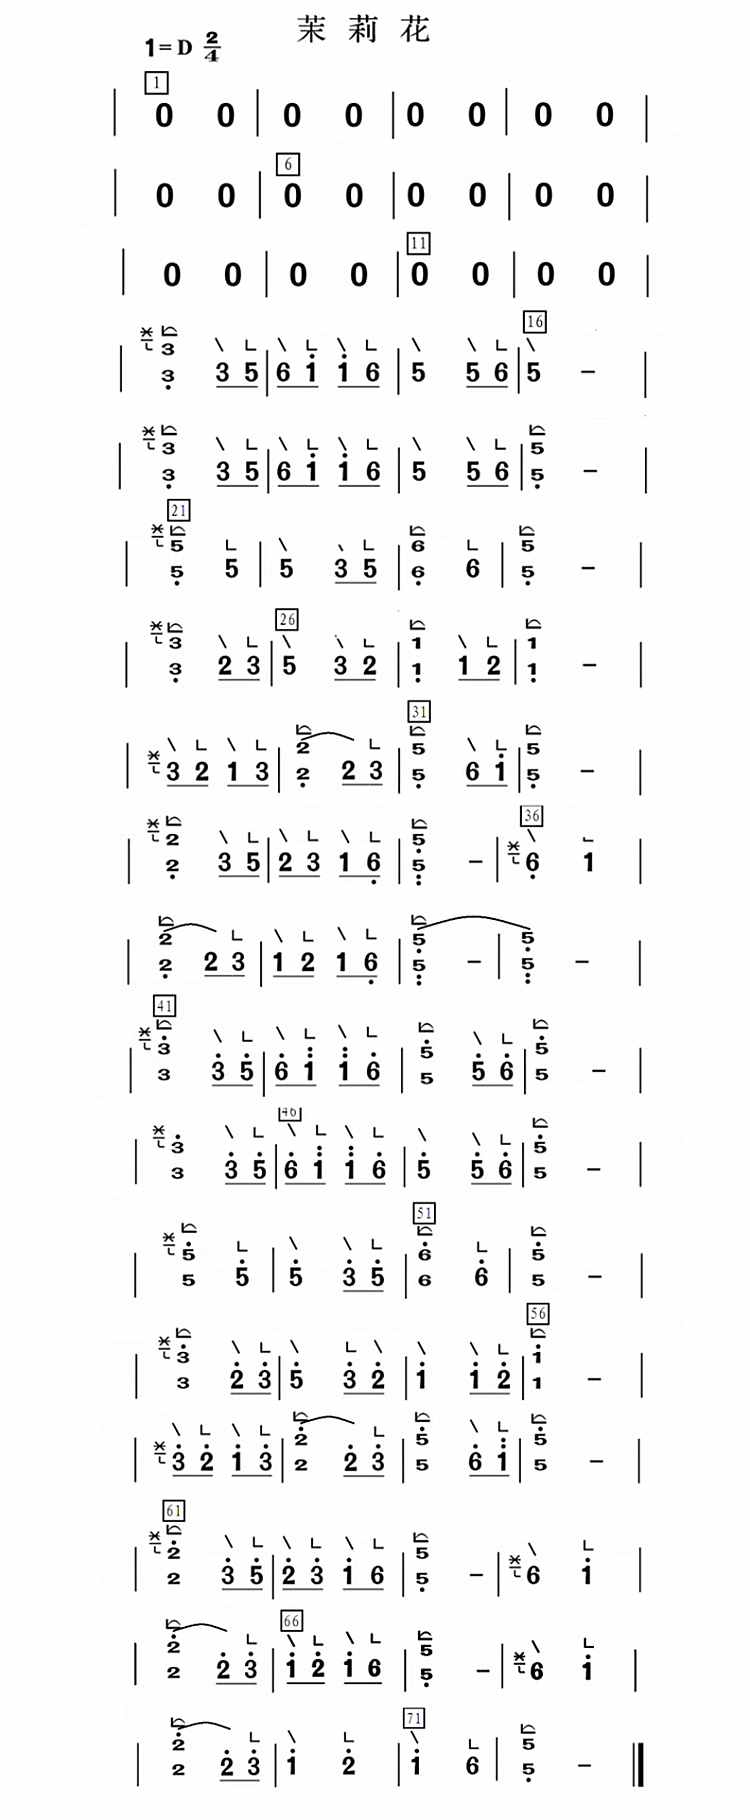 歌曲《茉莉花》古筝弹奏学习中用到的曲谱和伴奏音乐